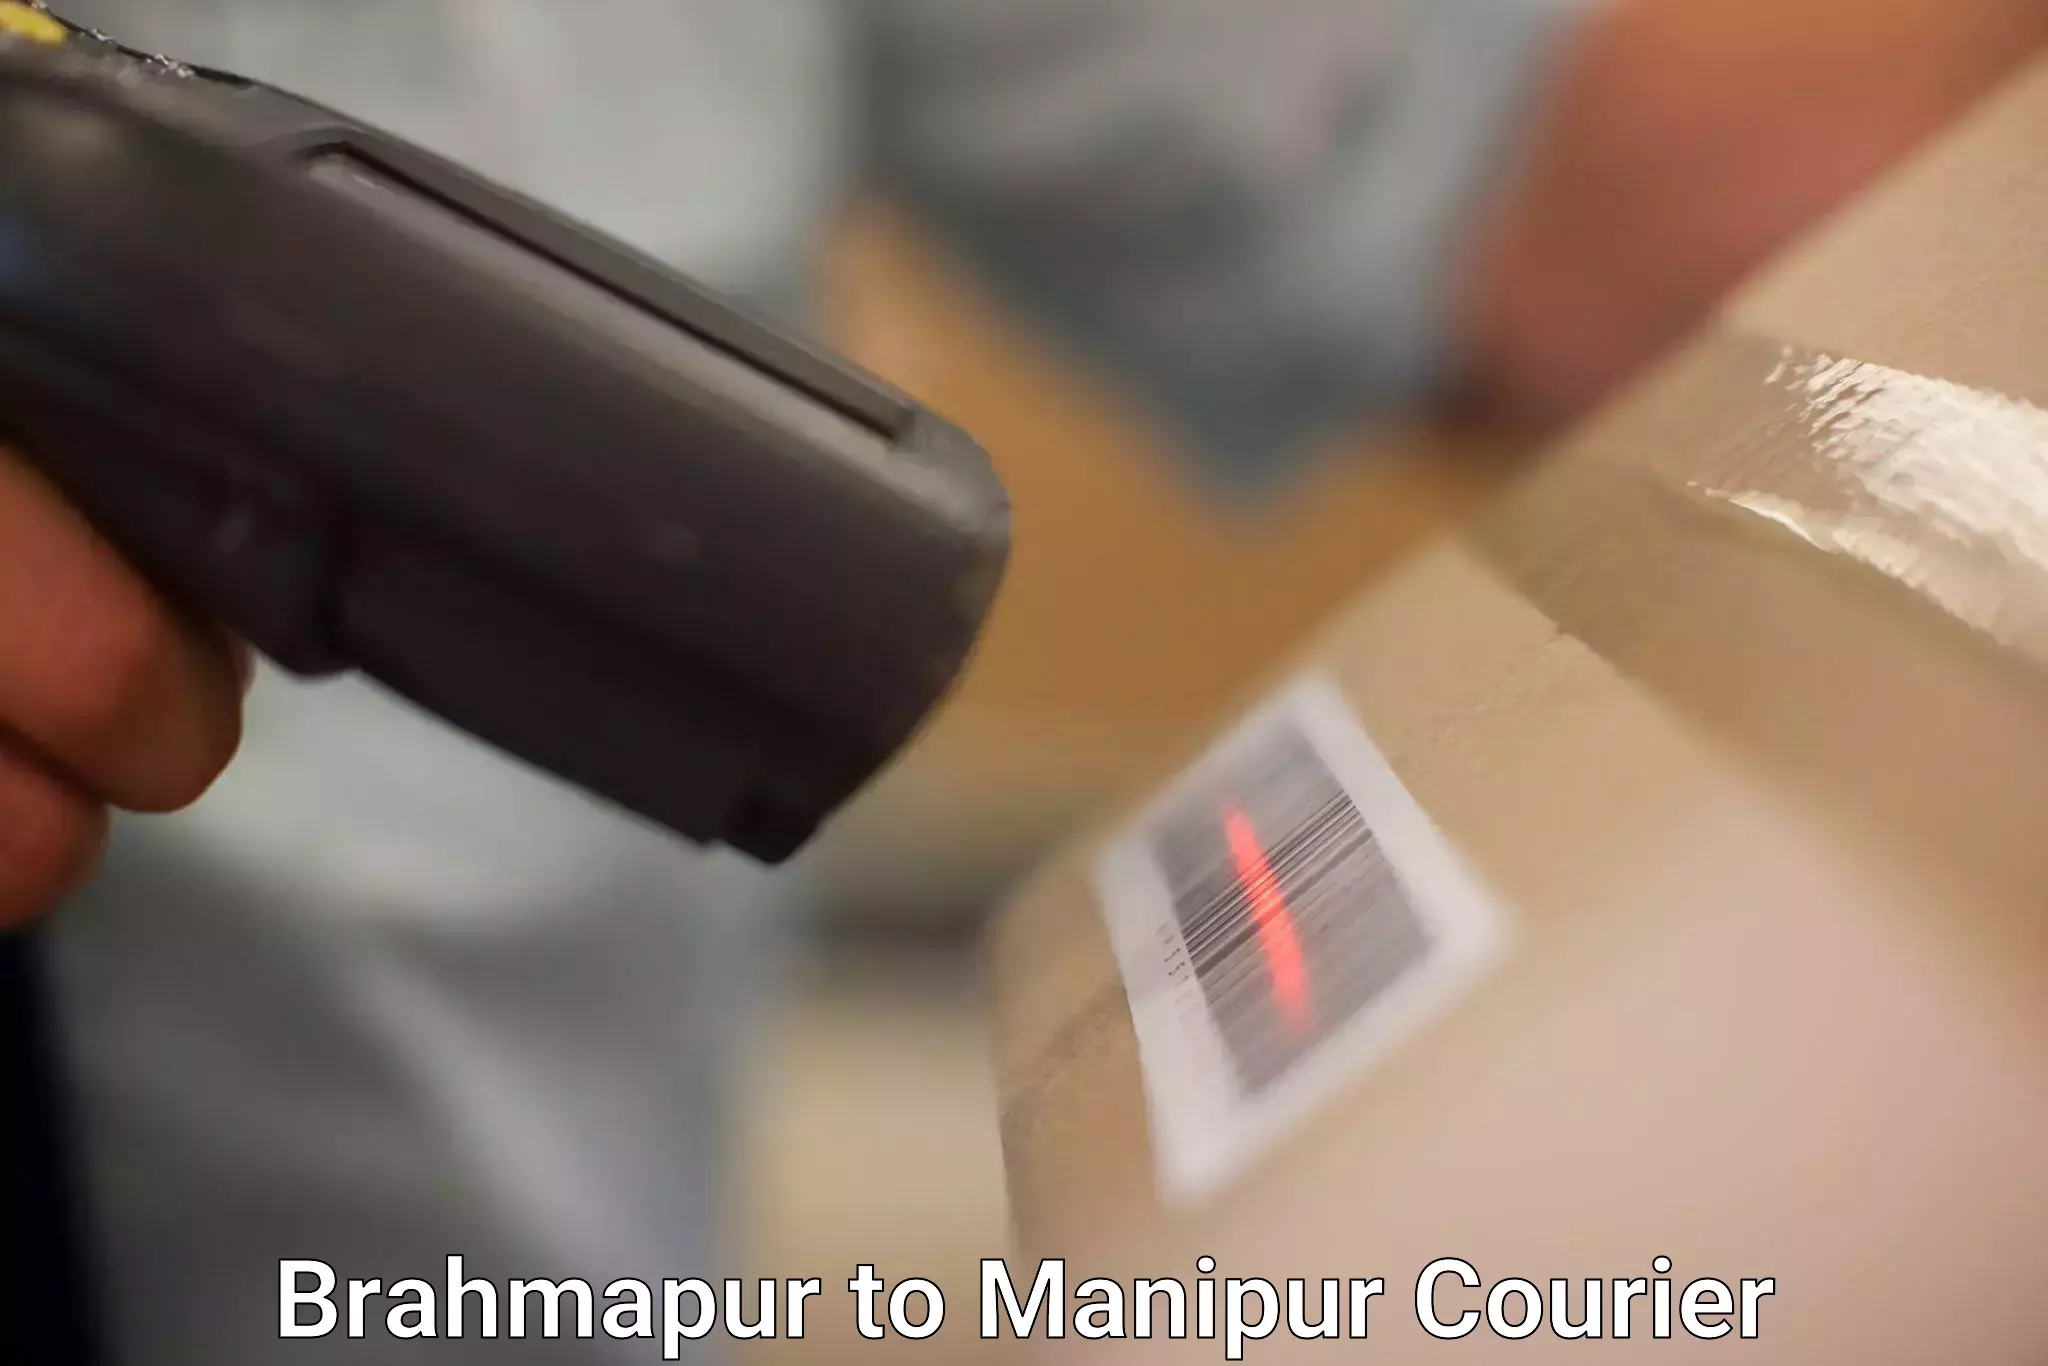 Next-generation courier services Brahmapur to Churachandpur